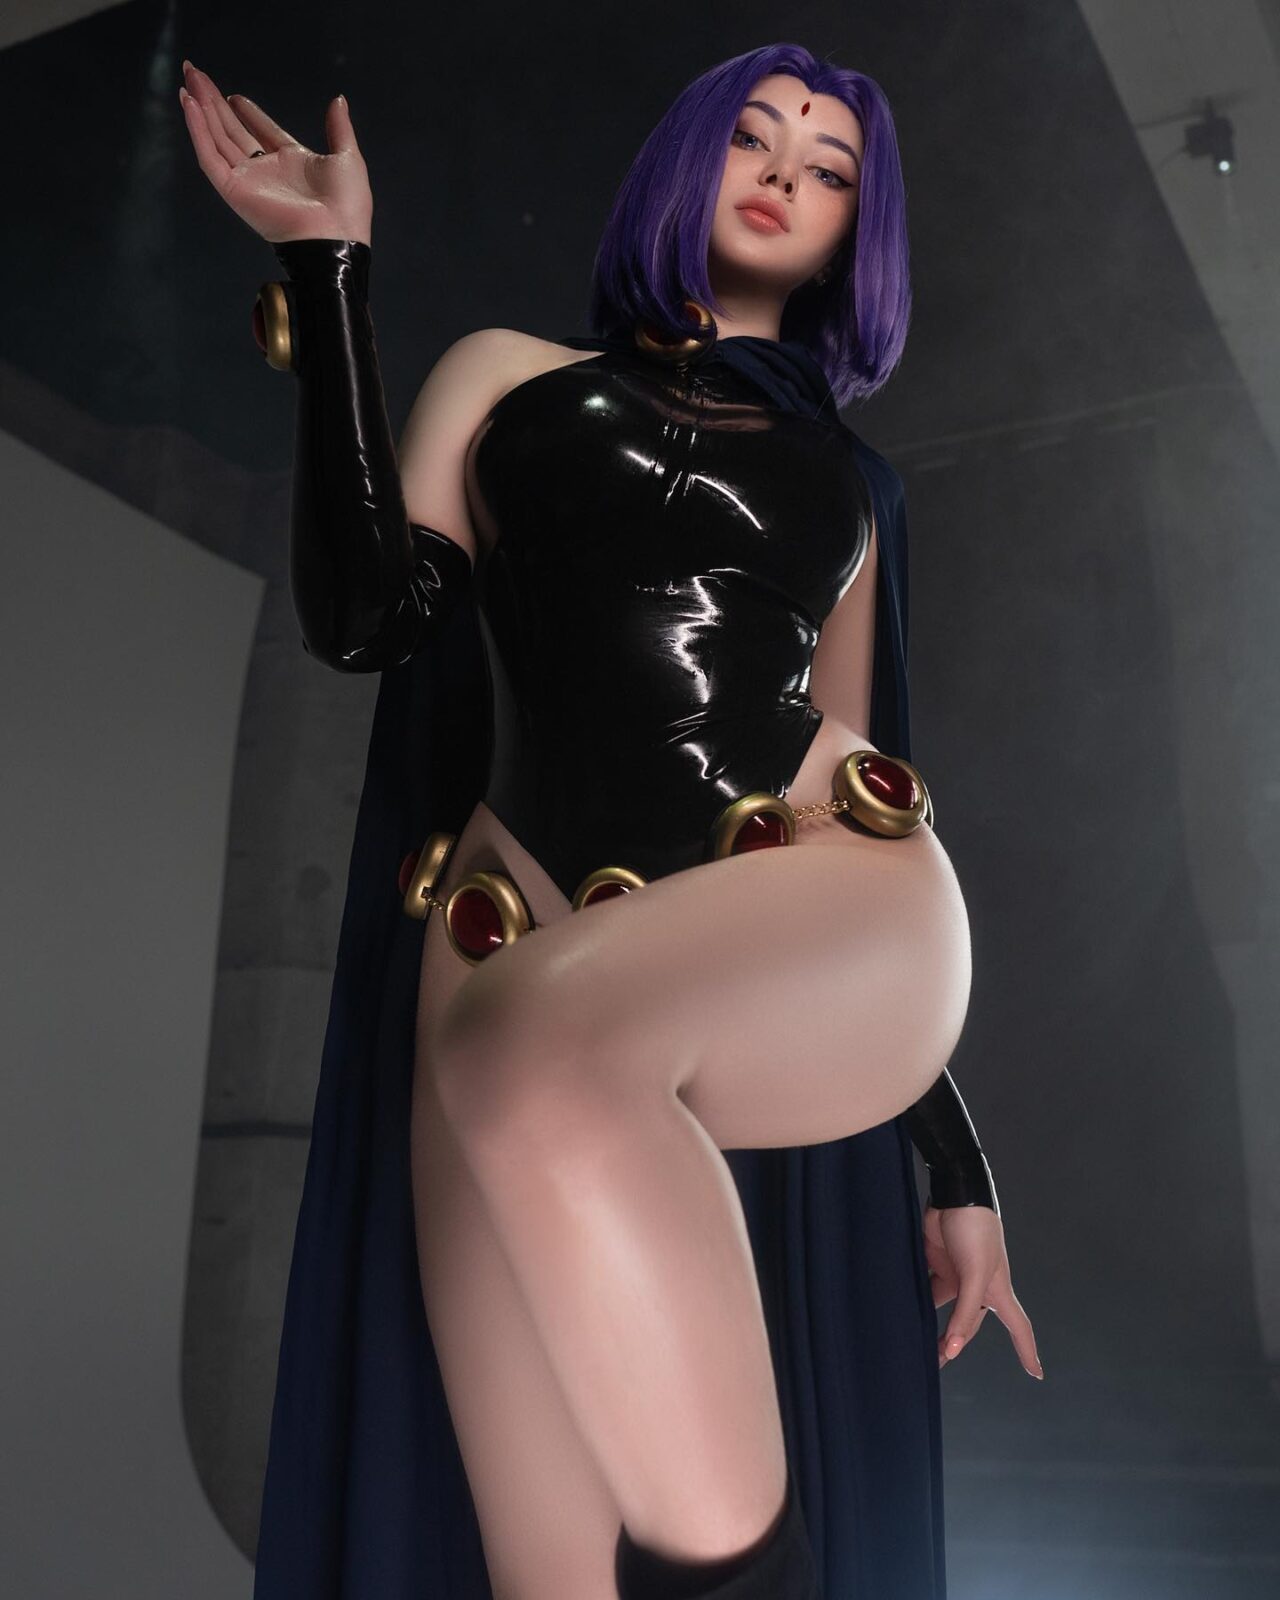 Modelo Alina Becker vai conquistar você com esse belíssimo cosplay da Ravena